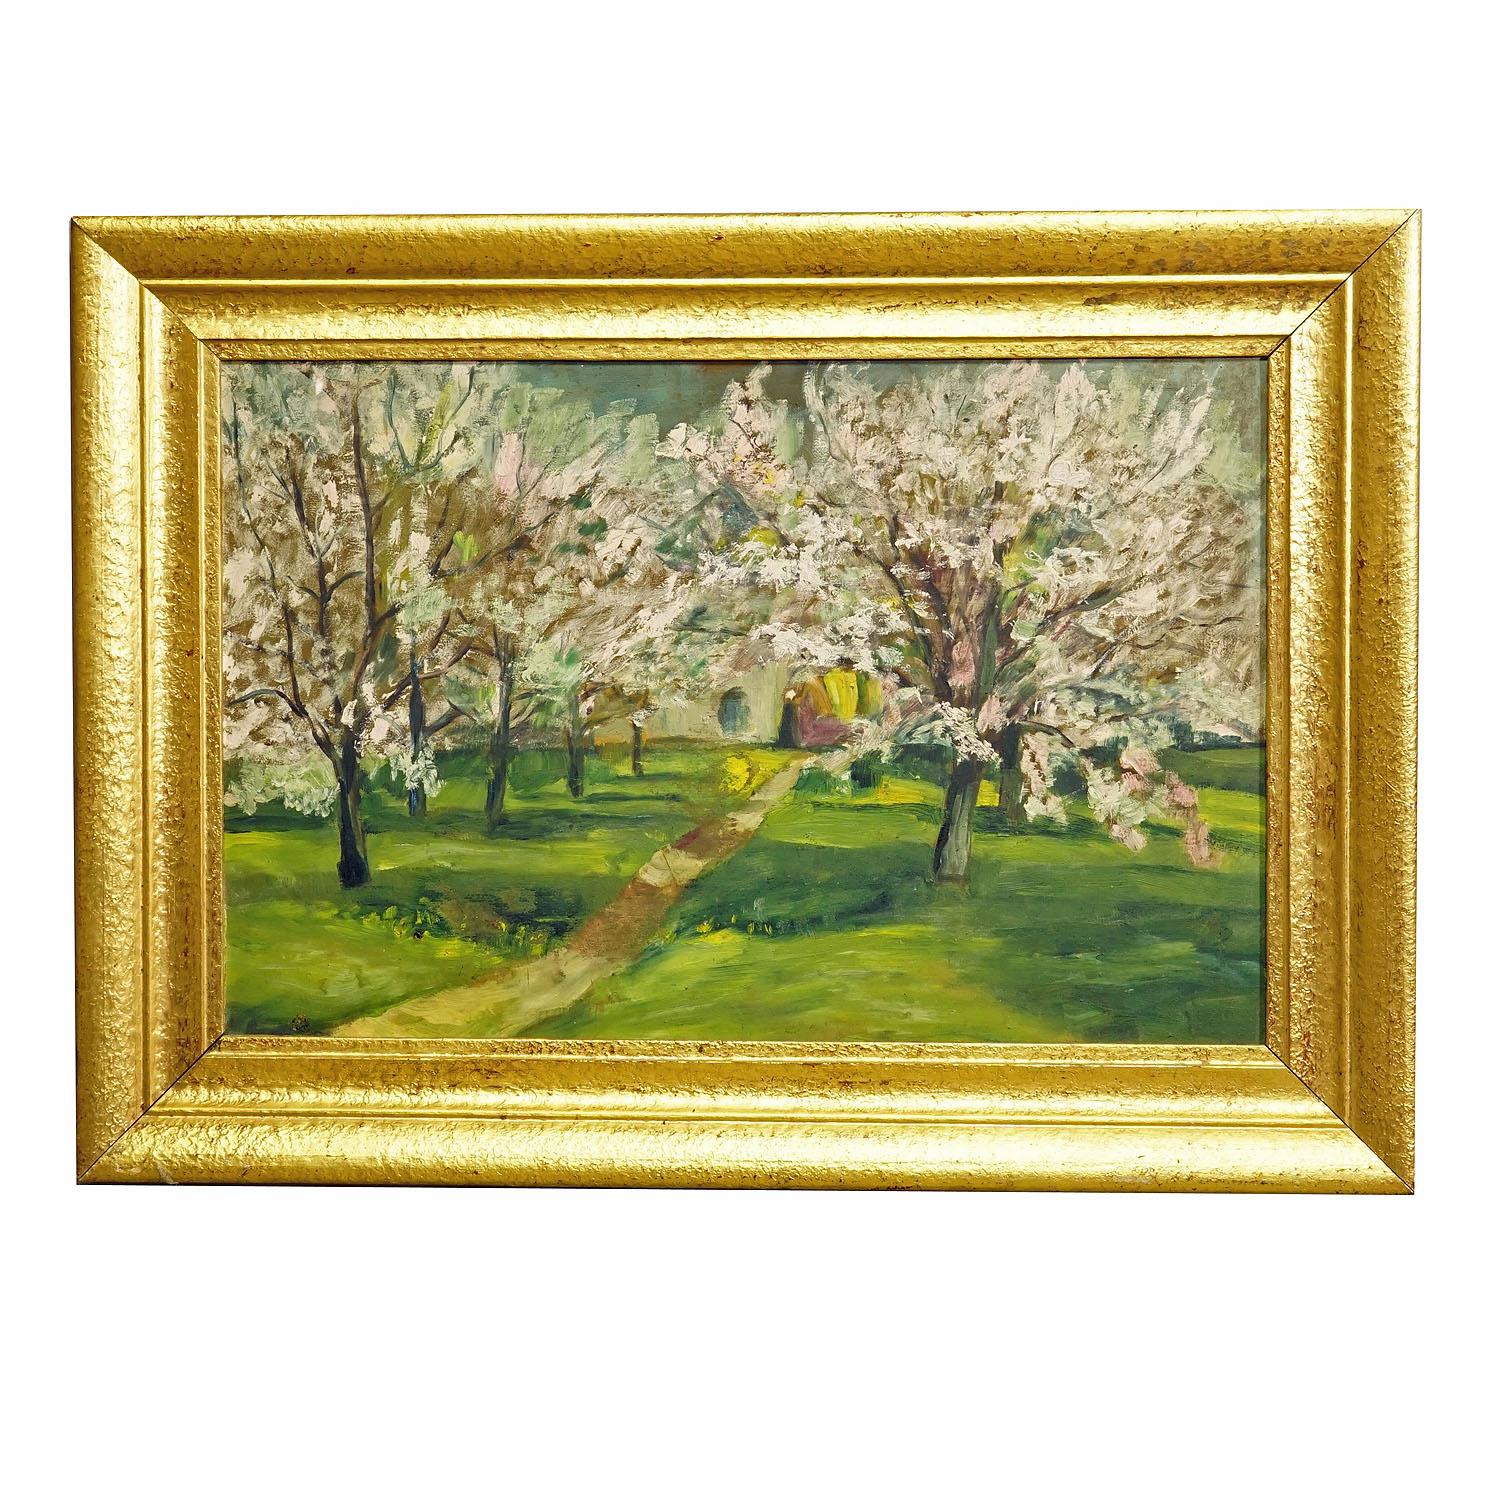 Impressionistisches Gemälde eines Gartens mit blühenden Apfelbäumen

Ein farbenfrohes impressionistisches Ölgemälde, das einen Garten mit blühenden Apfelbäumen darstellt. Ölgemälde auf Karton mit kräftigen Pastellfarben. Gerahmt mit antikem